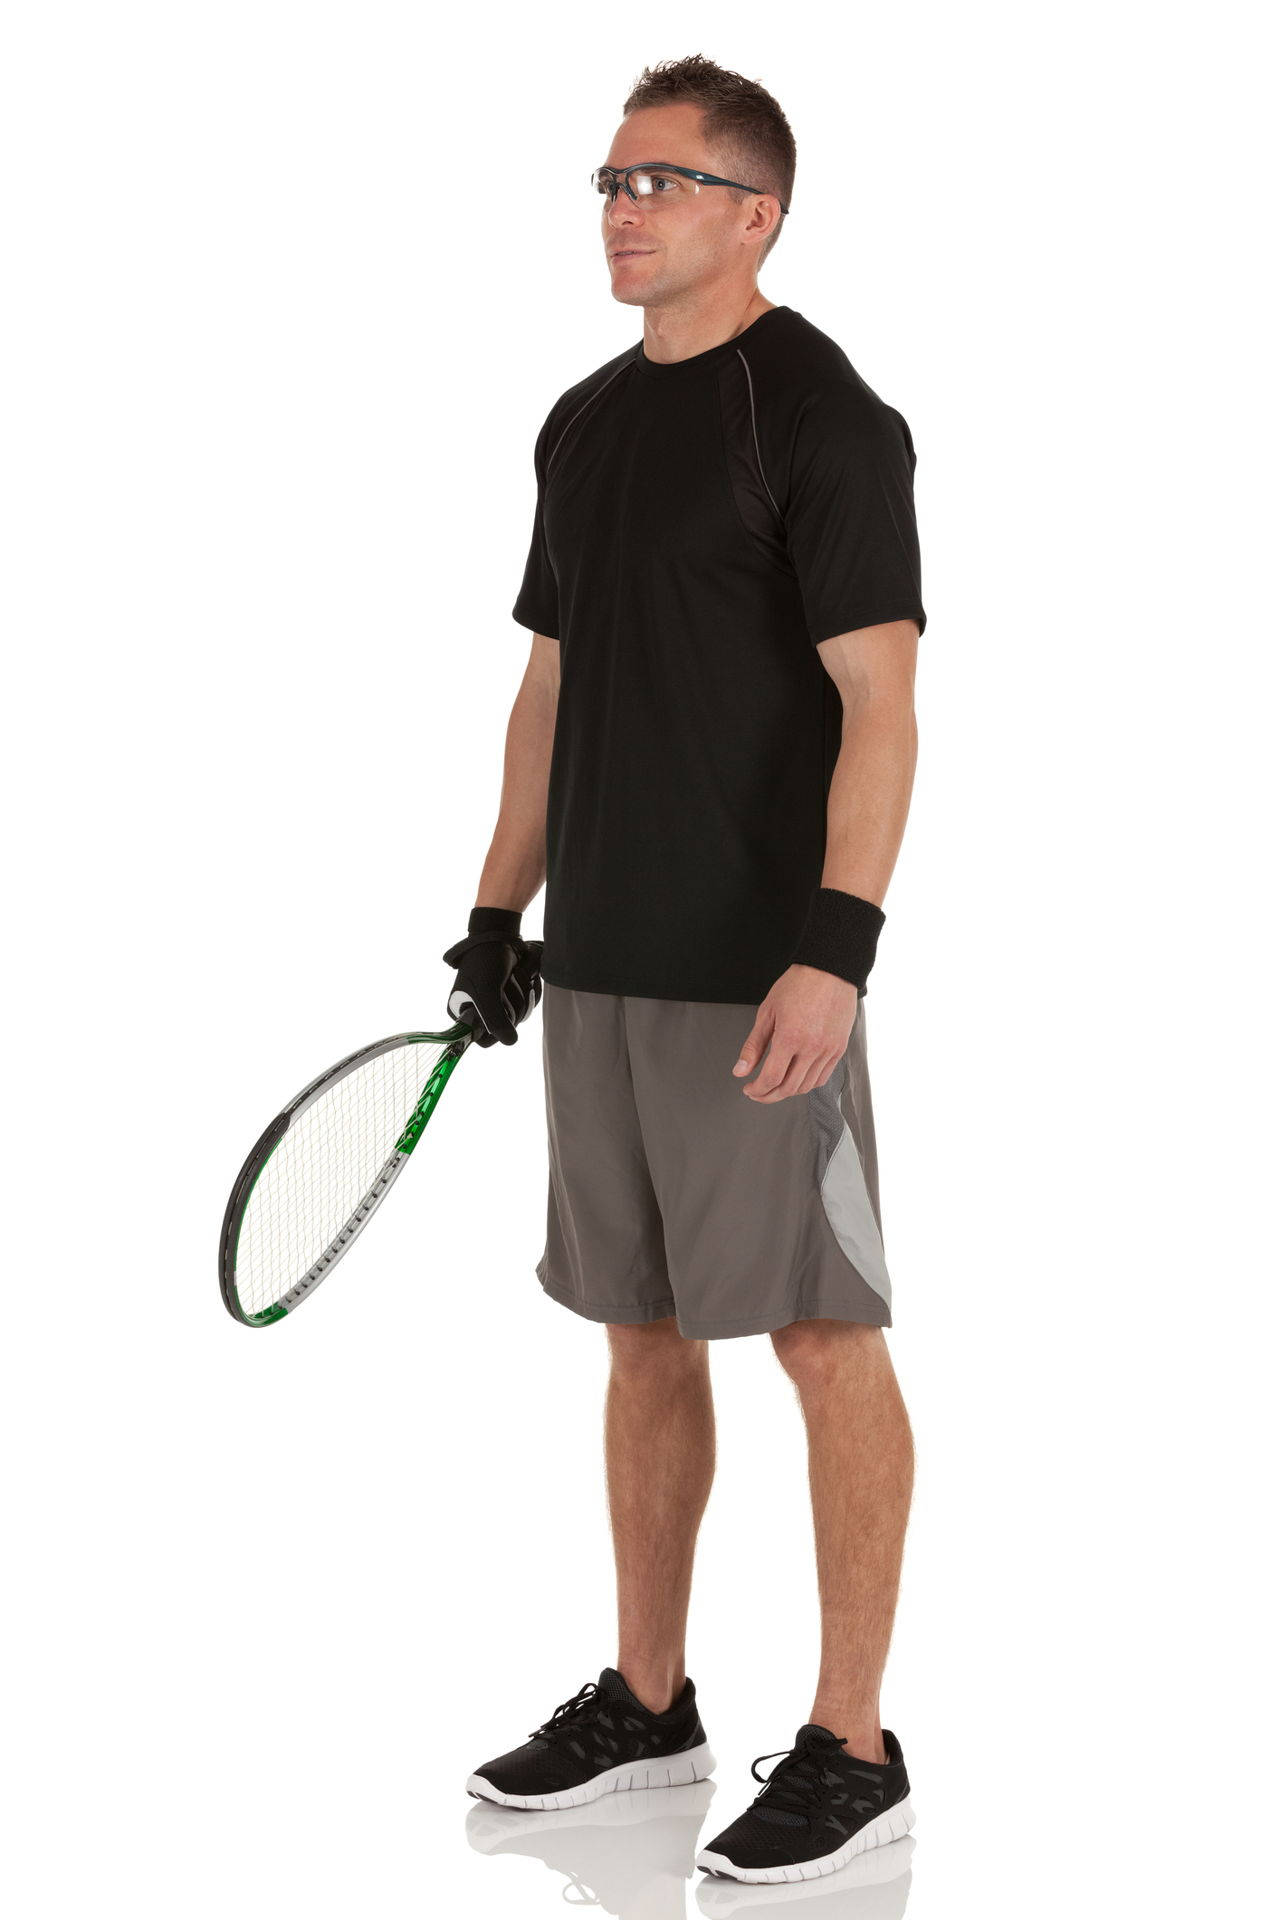 Mannhält Einen Racquetball-schläger. Wallpaper